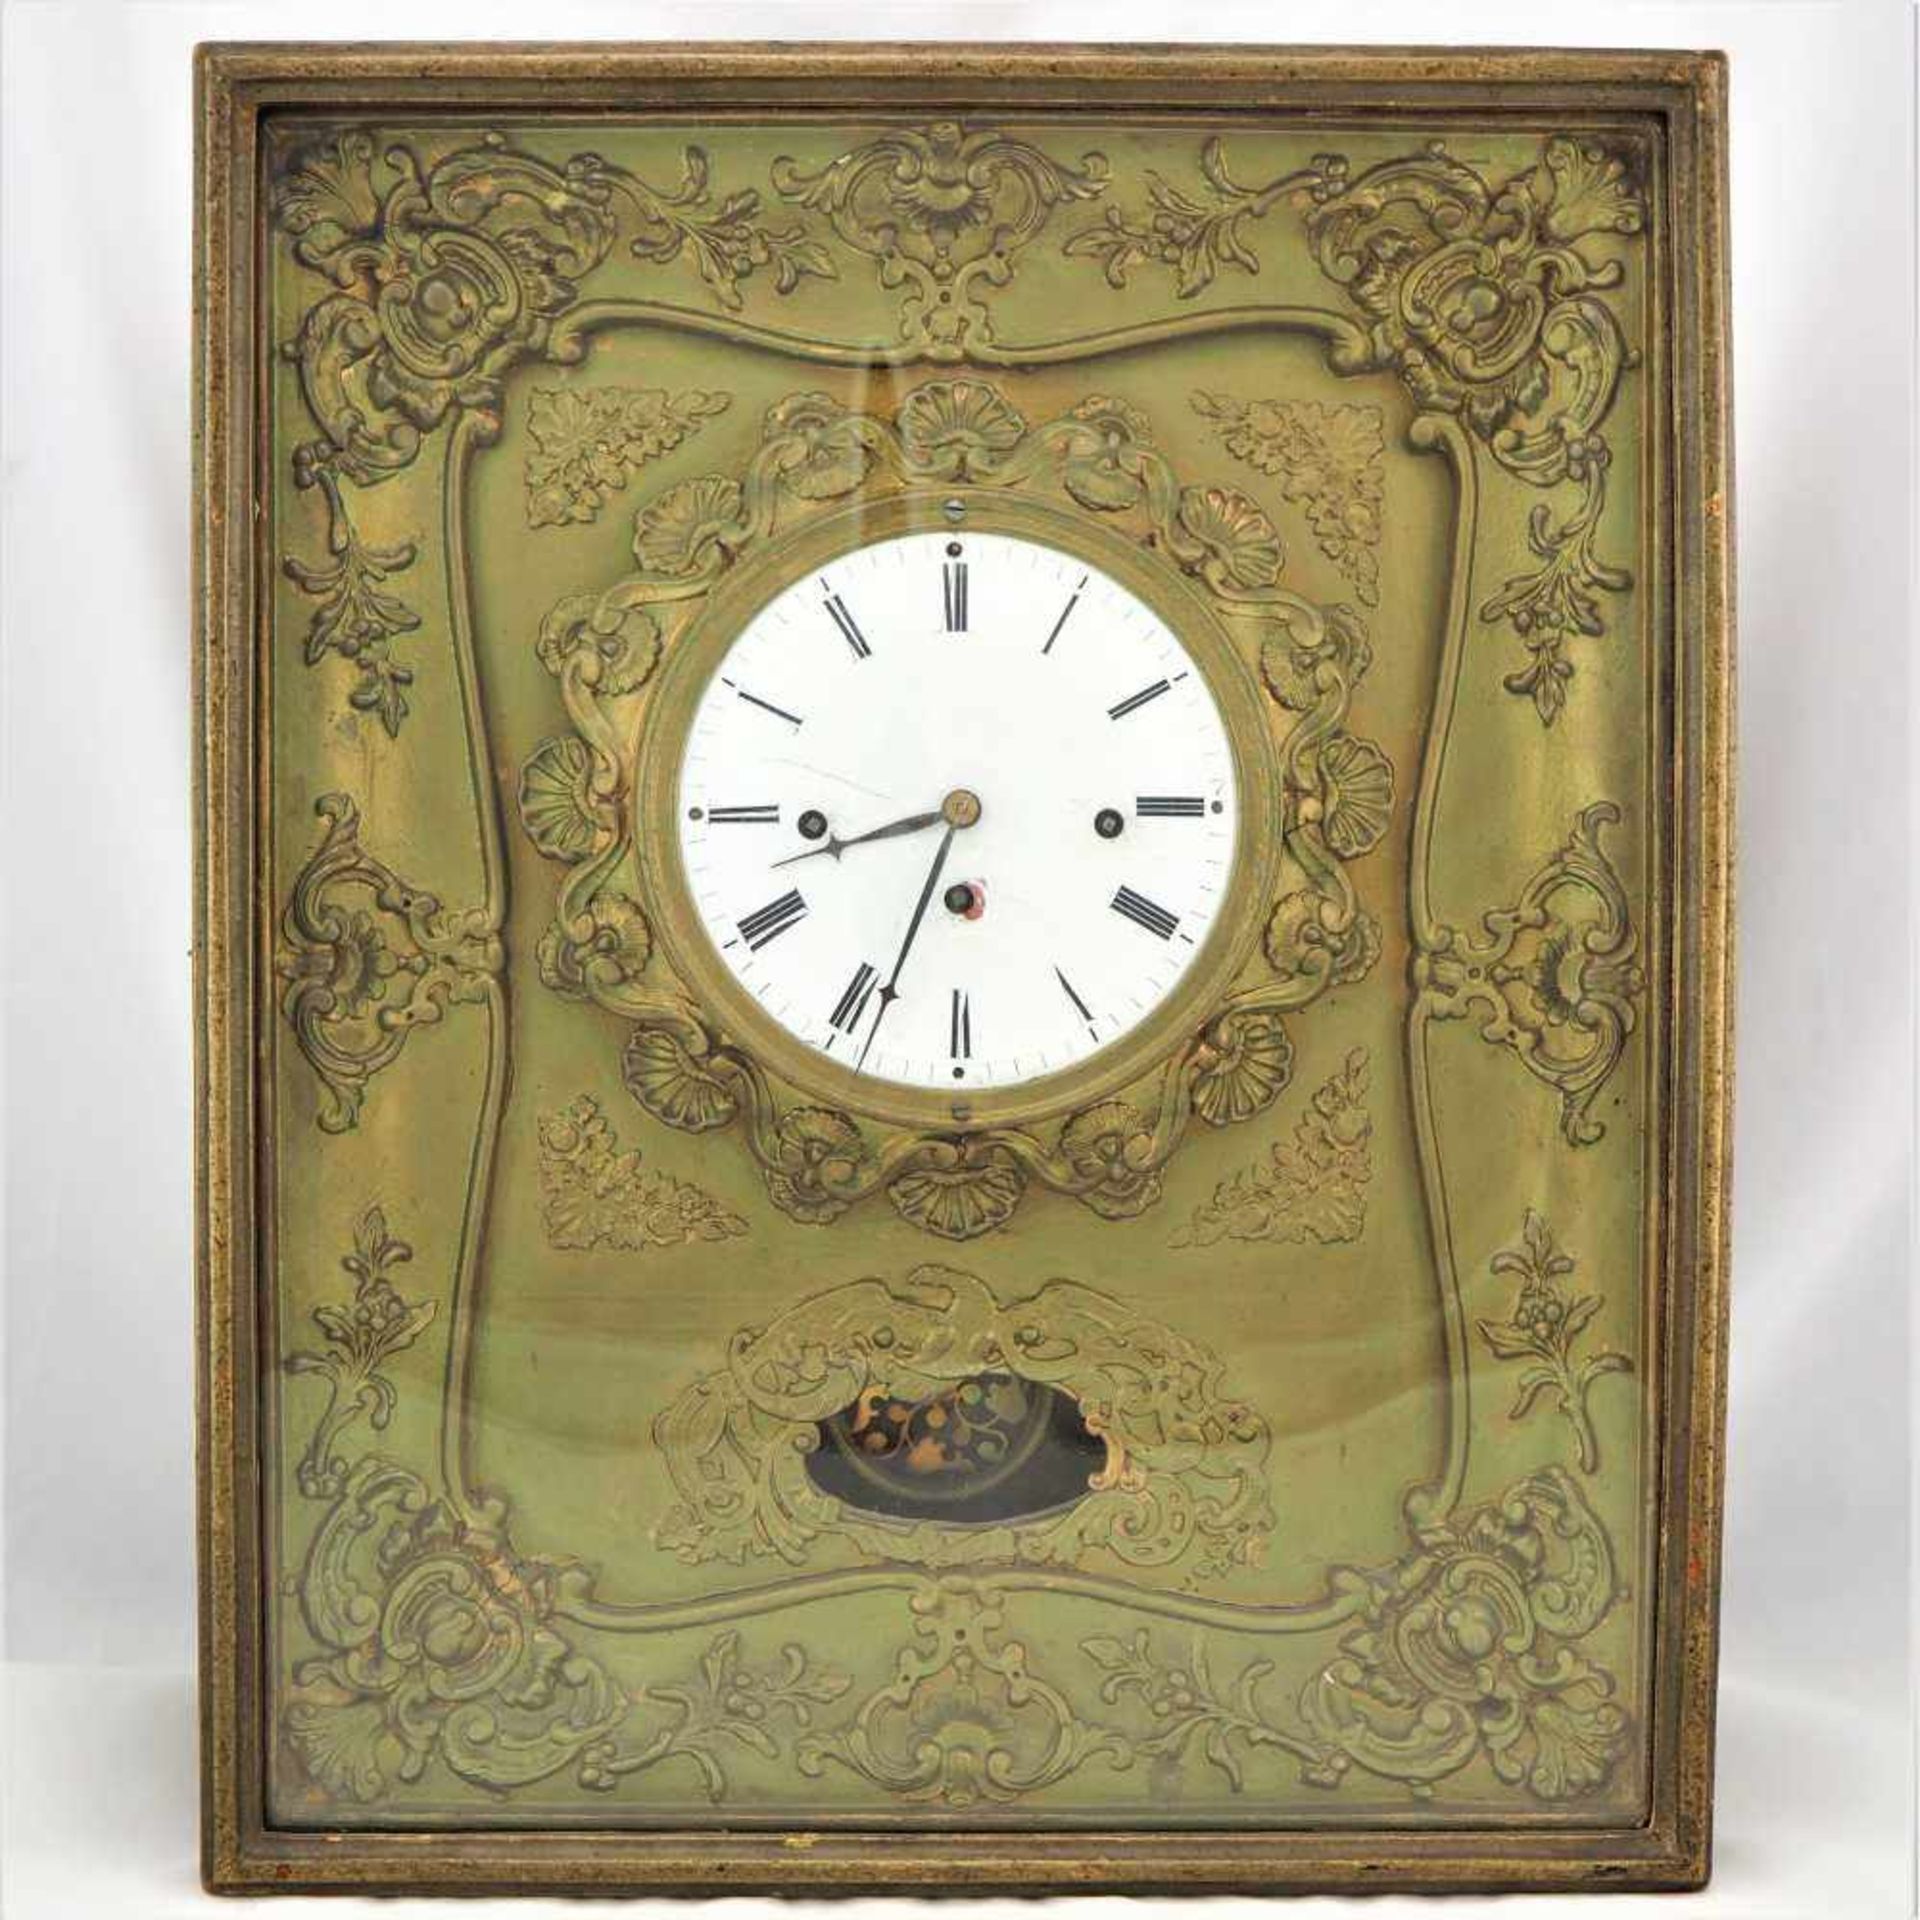 Wiener Rahmenuhr, um 1830Goldfarbener Uhrenkasten mit reichlicher Verzierung. Werk mit Wiener 4/4